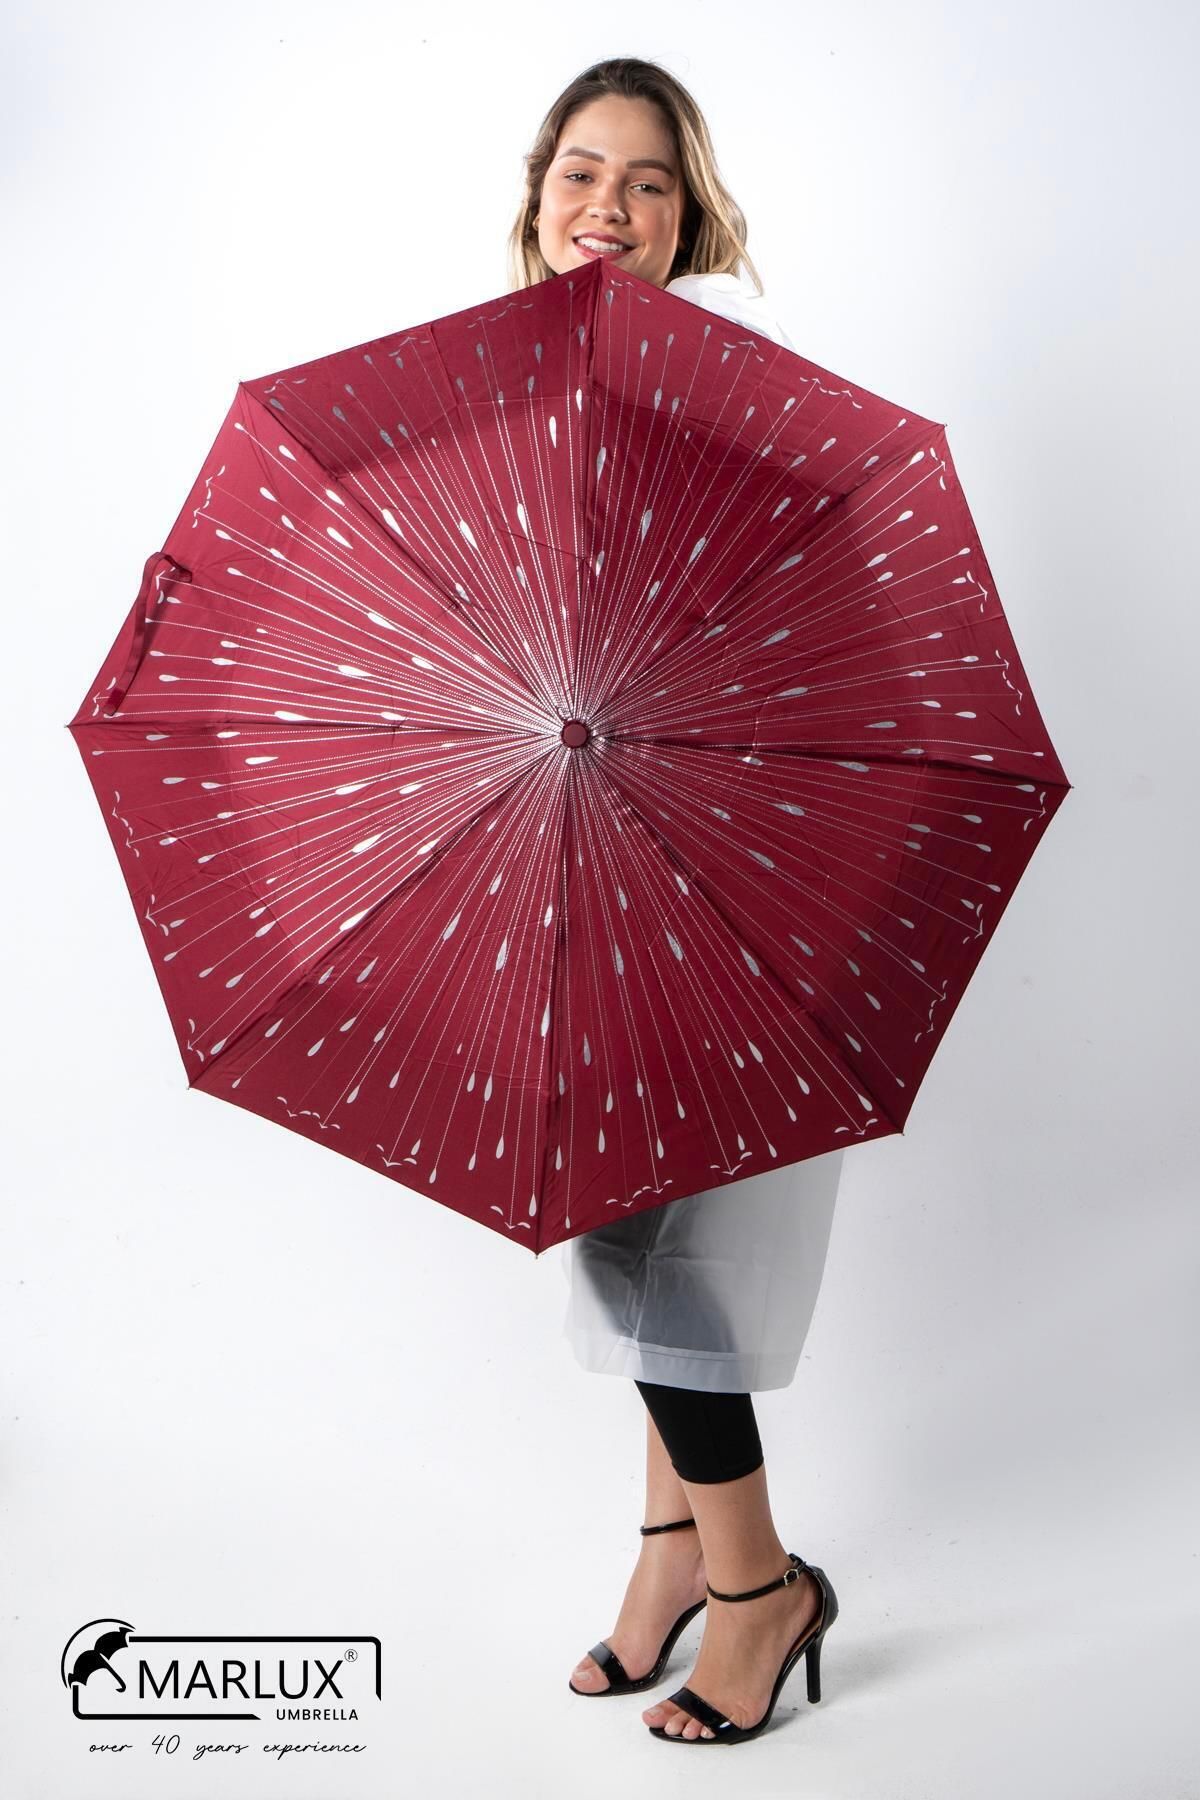 Marlux Kırmızı Damlalı Tam Otomatik Kadın Şemsiye M21mar711r001